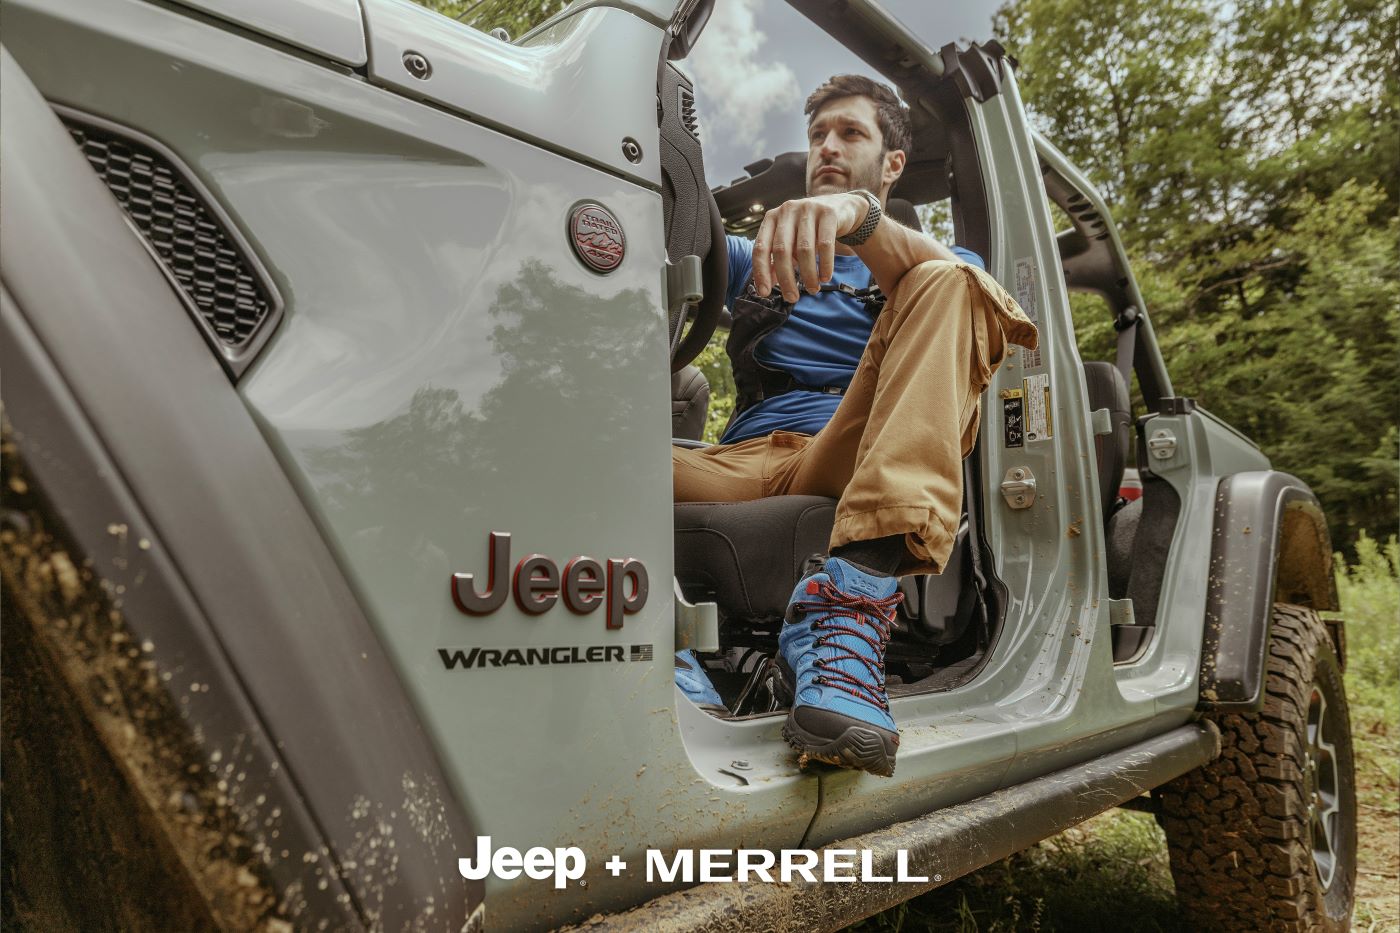 Jeep Marrell